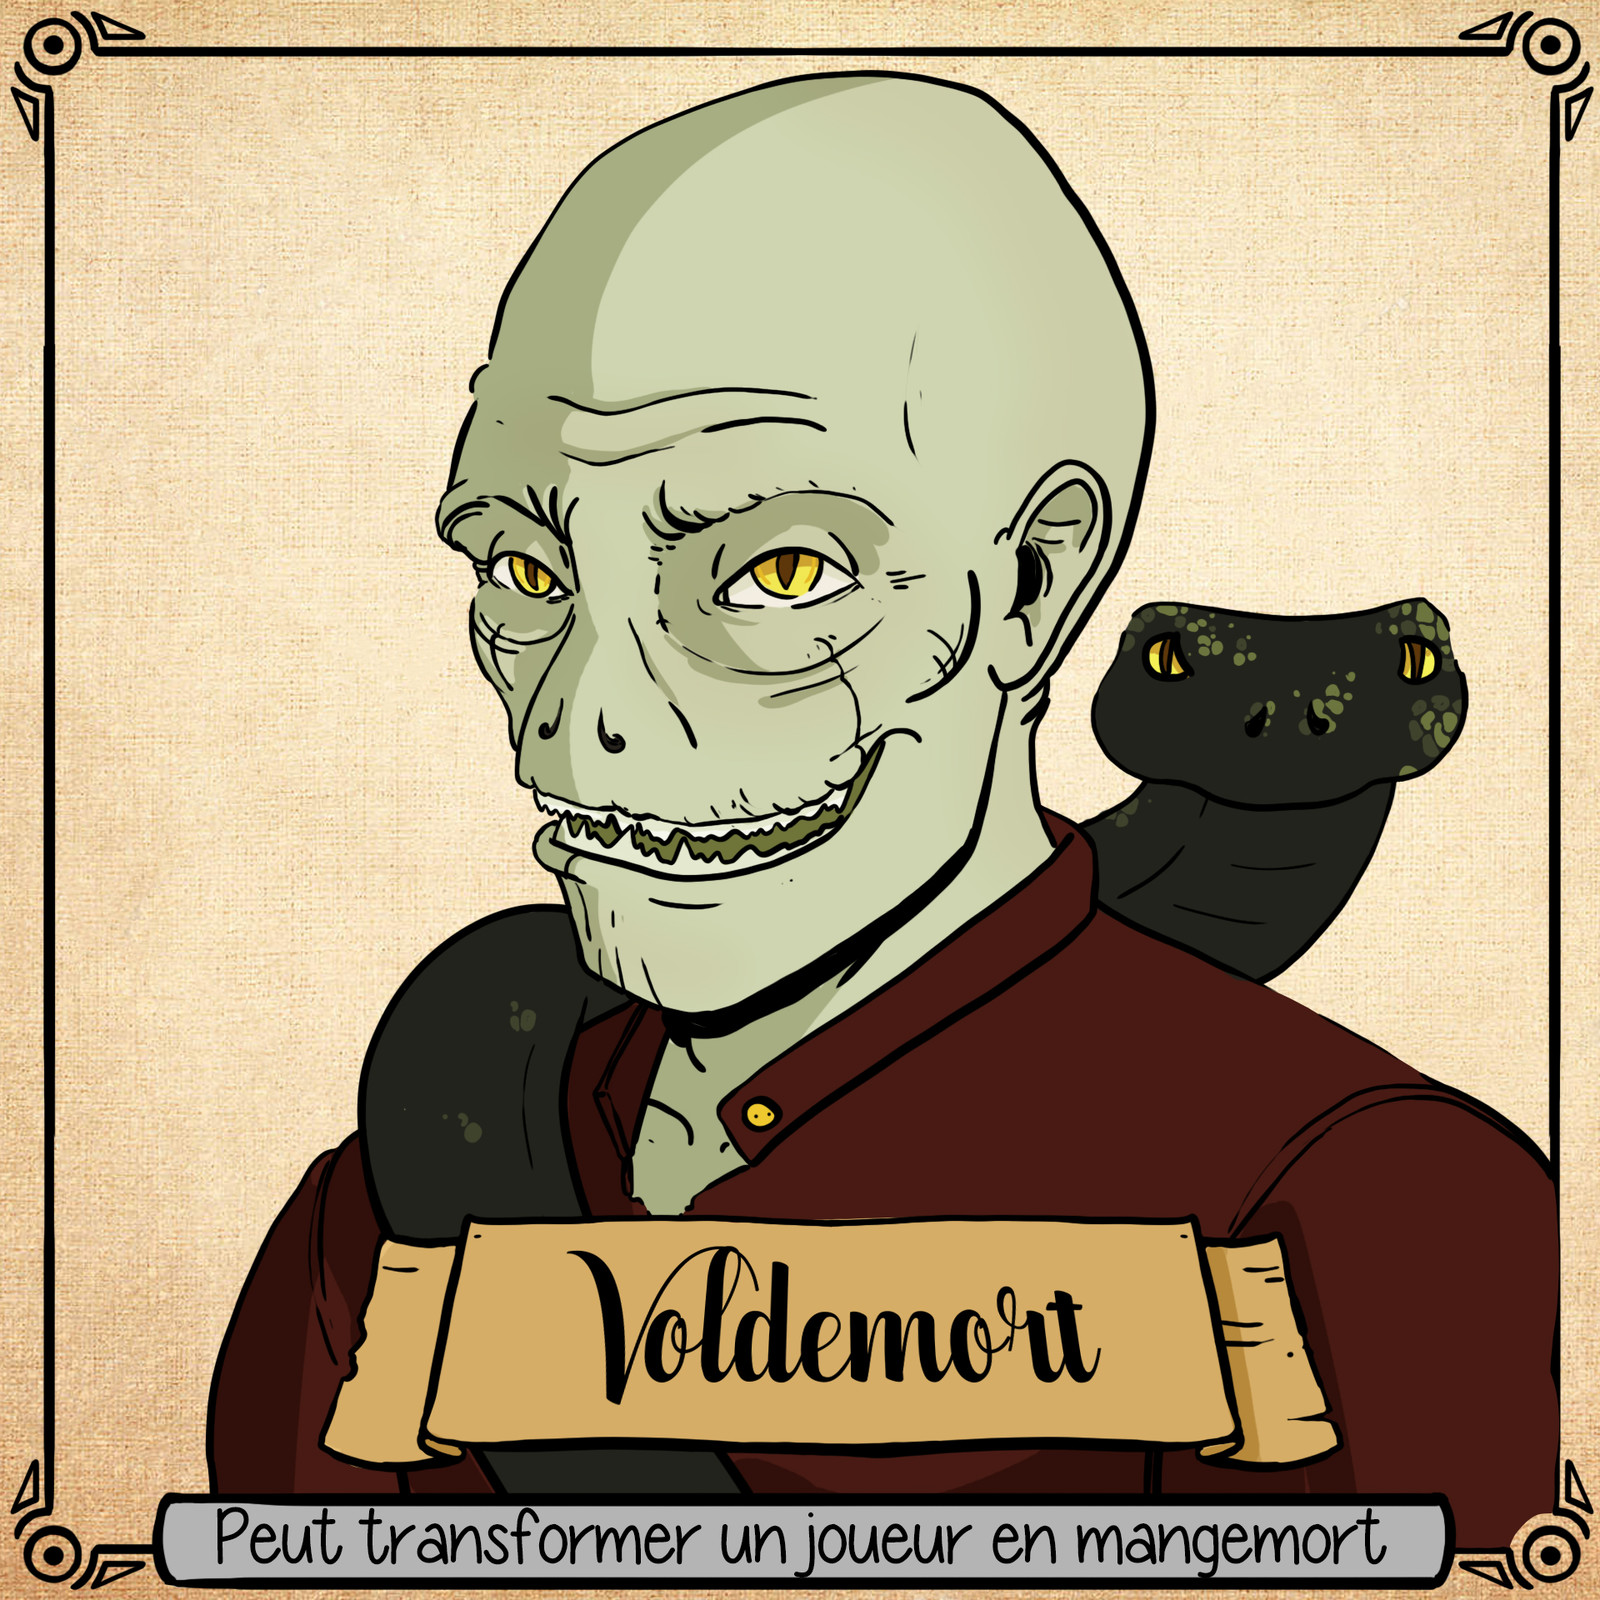 Voldemort est un mangemort qui a un pouvoir en plus. Il peut transformer n'importe quand un villageois en mangemort. Dangereux !